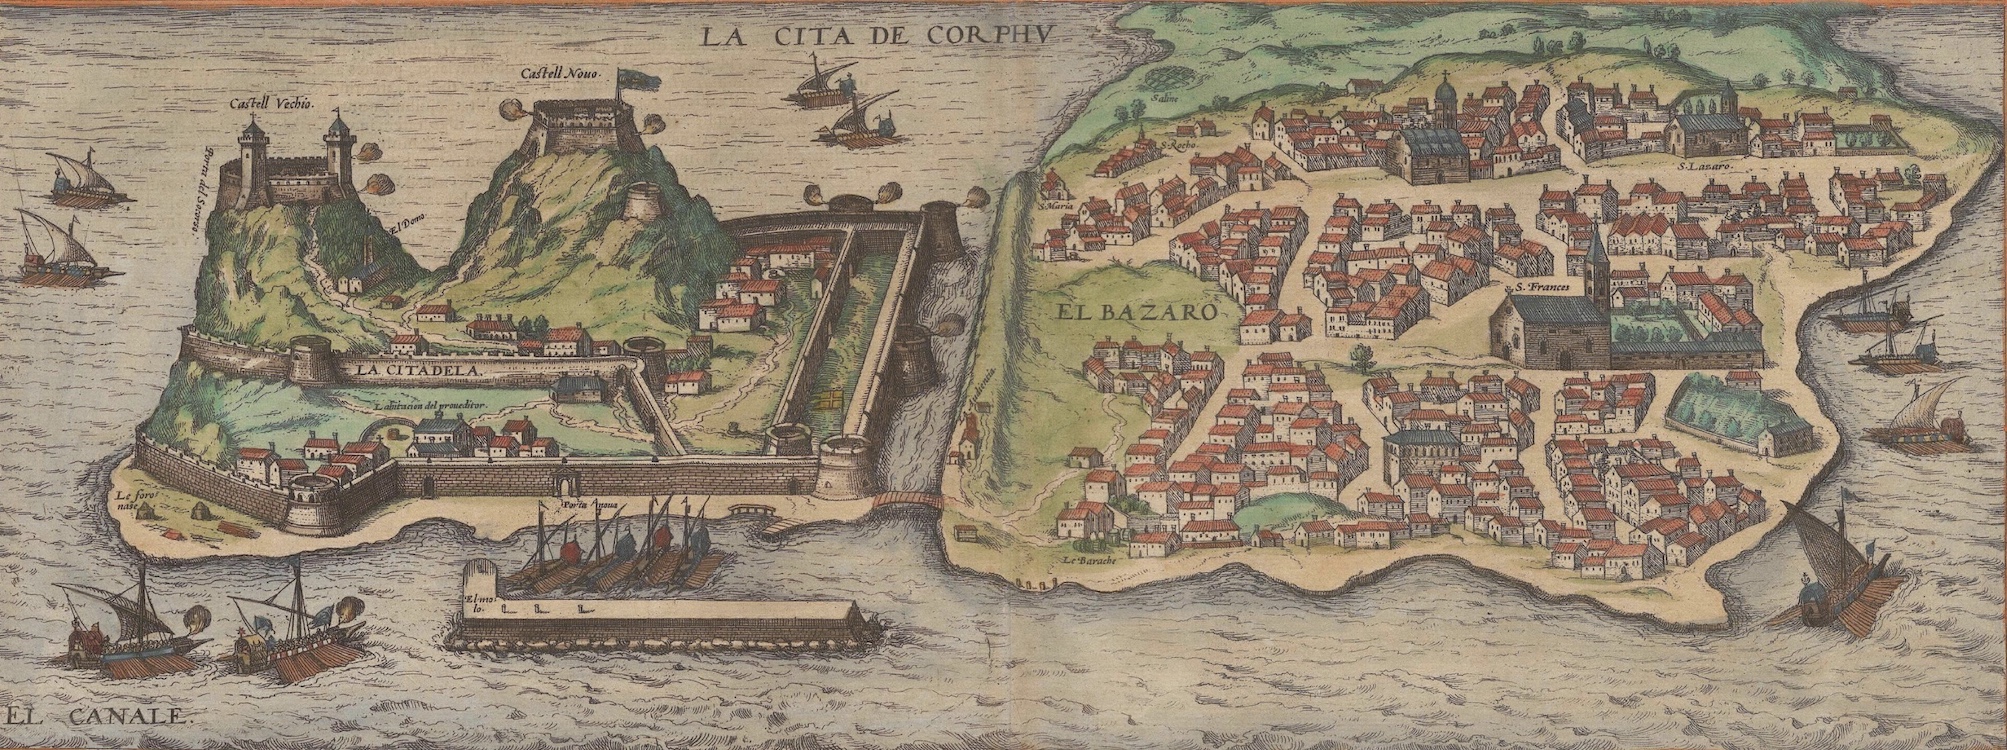 Puerto de Corfú. <em>Civitatis orbis terrarum</em>, vol. 2 (1575)